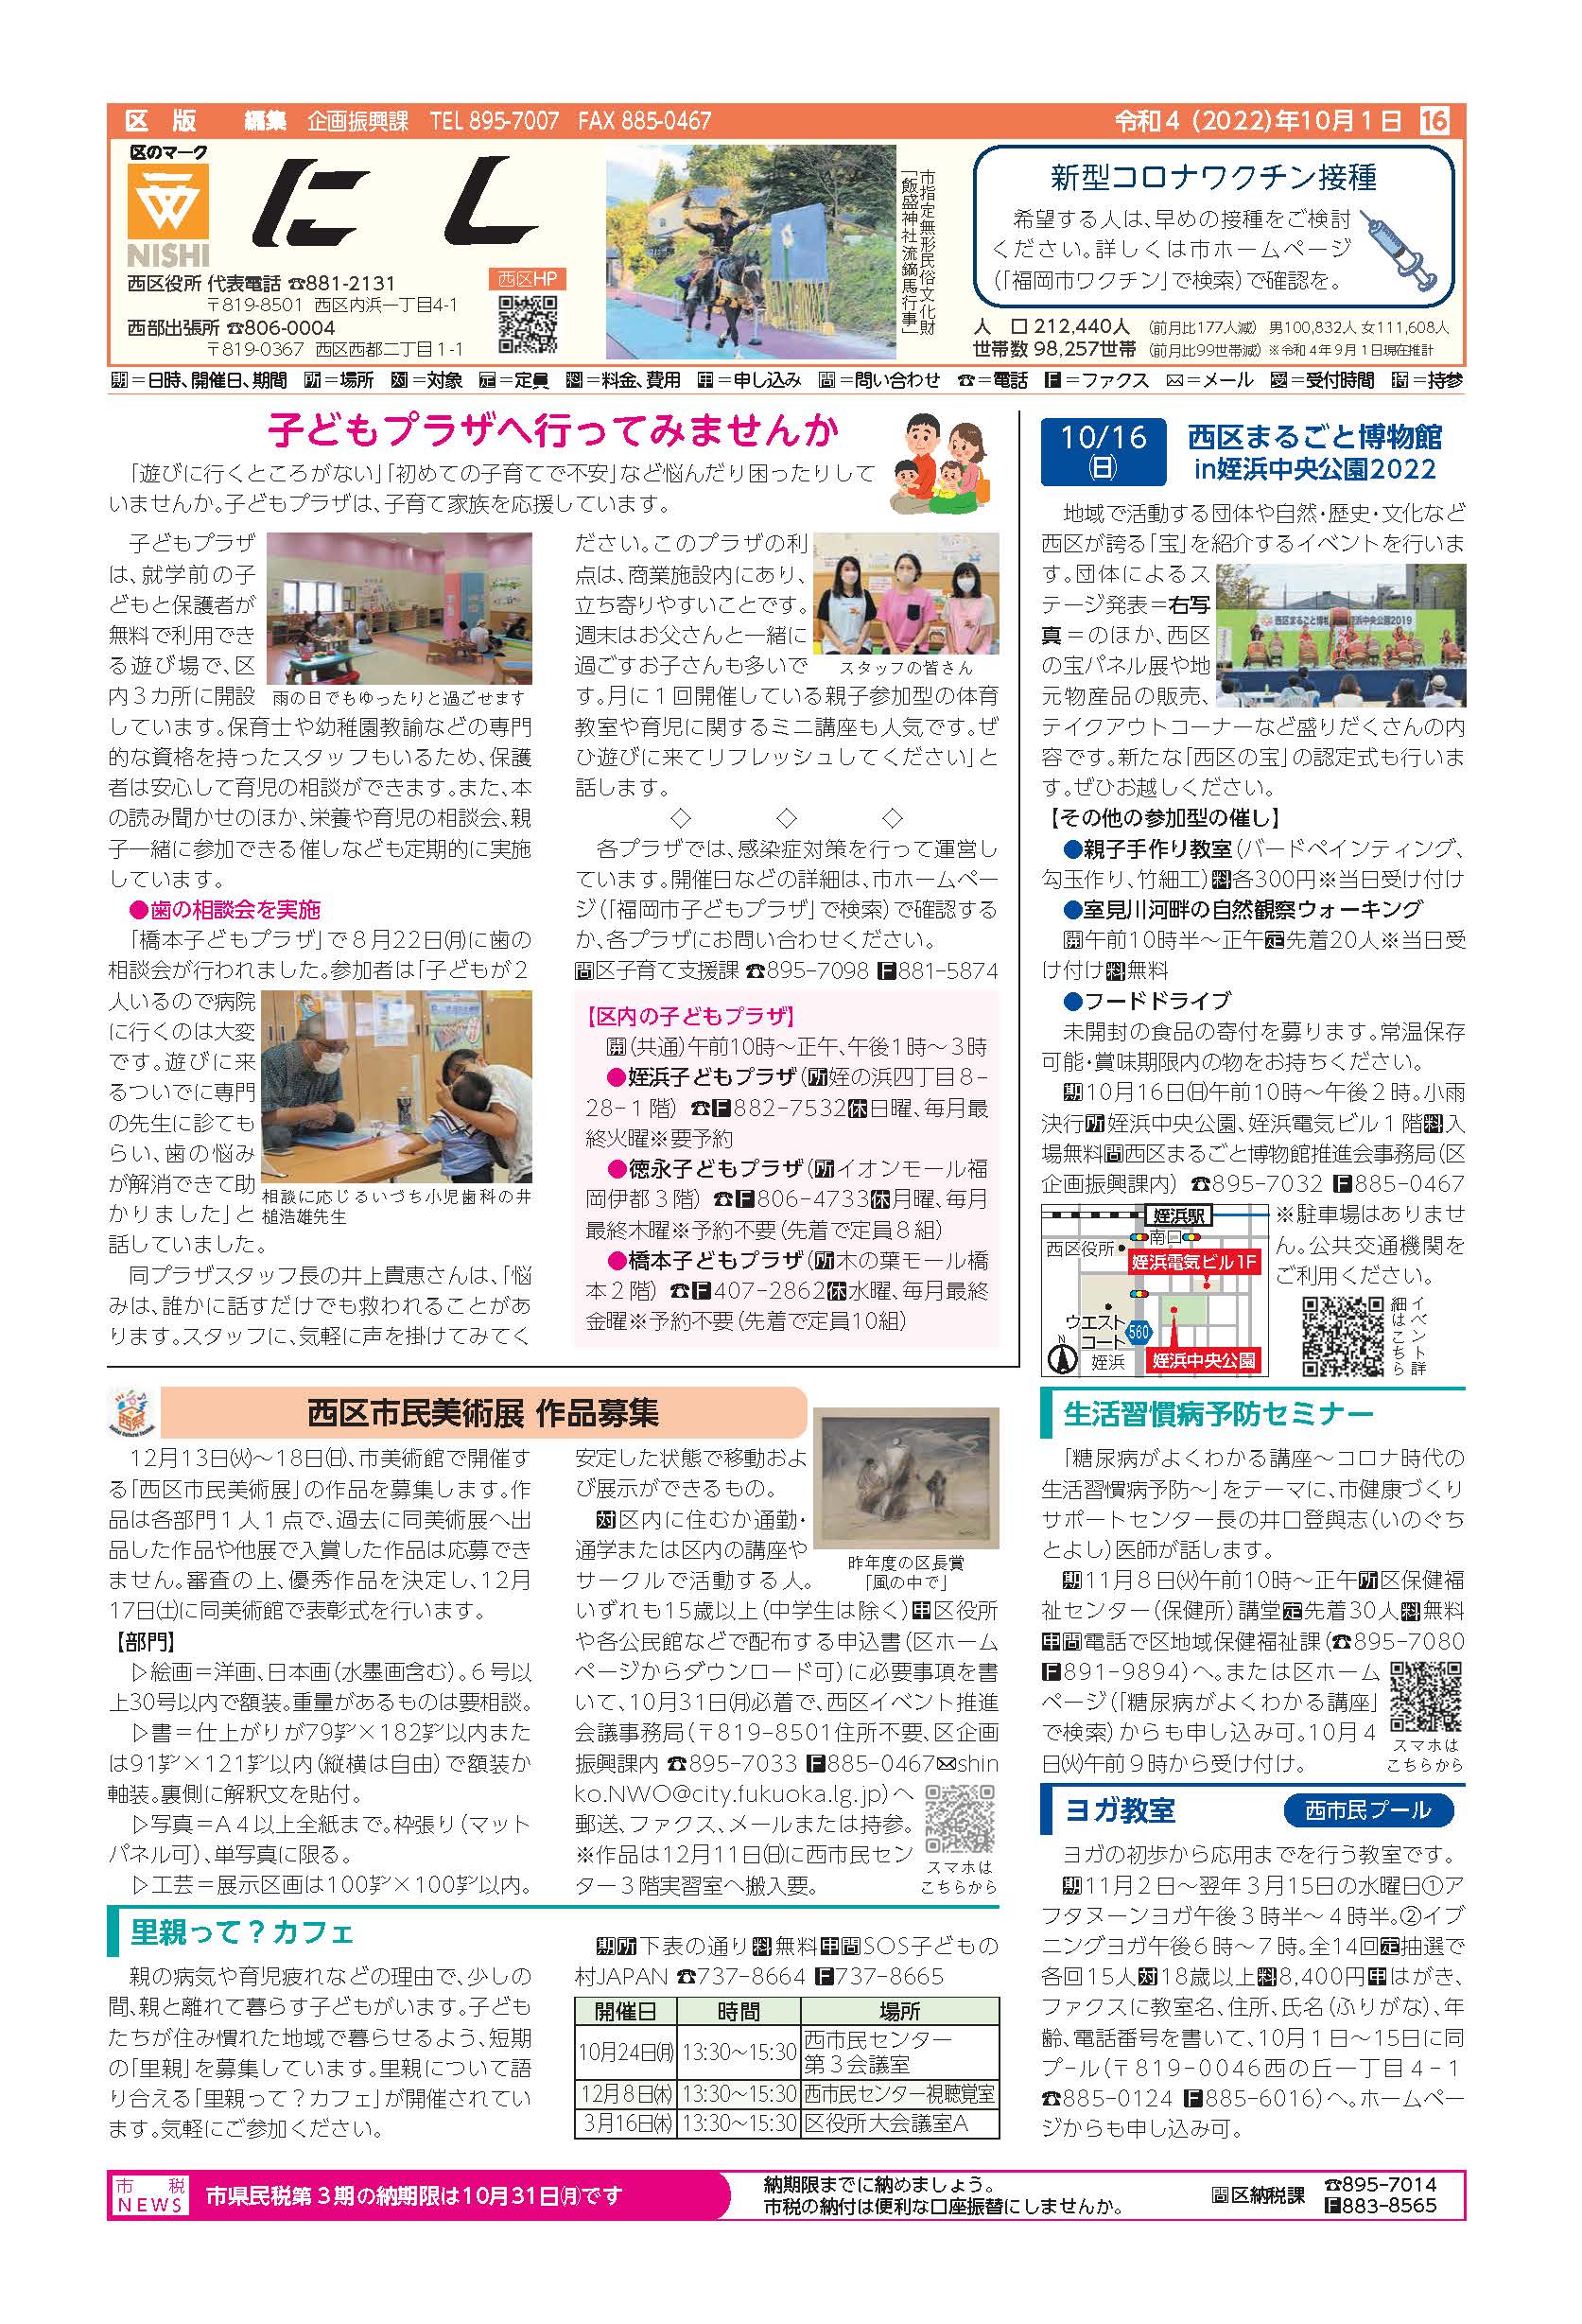 福岡市政だより2022年10月1日号の西区版の紙面画像